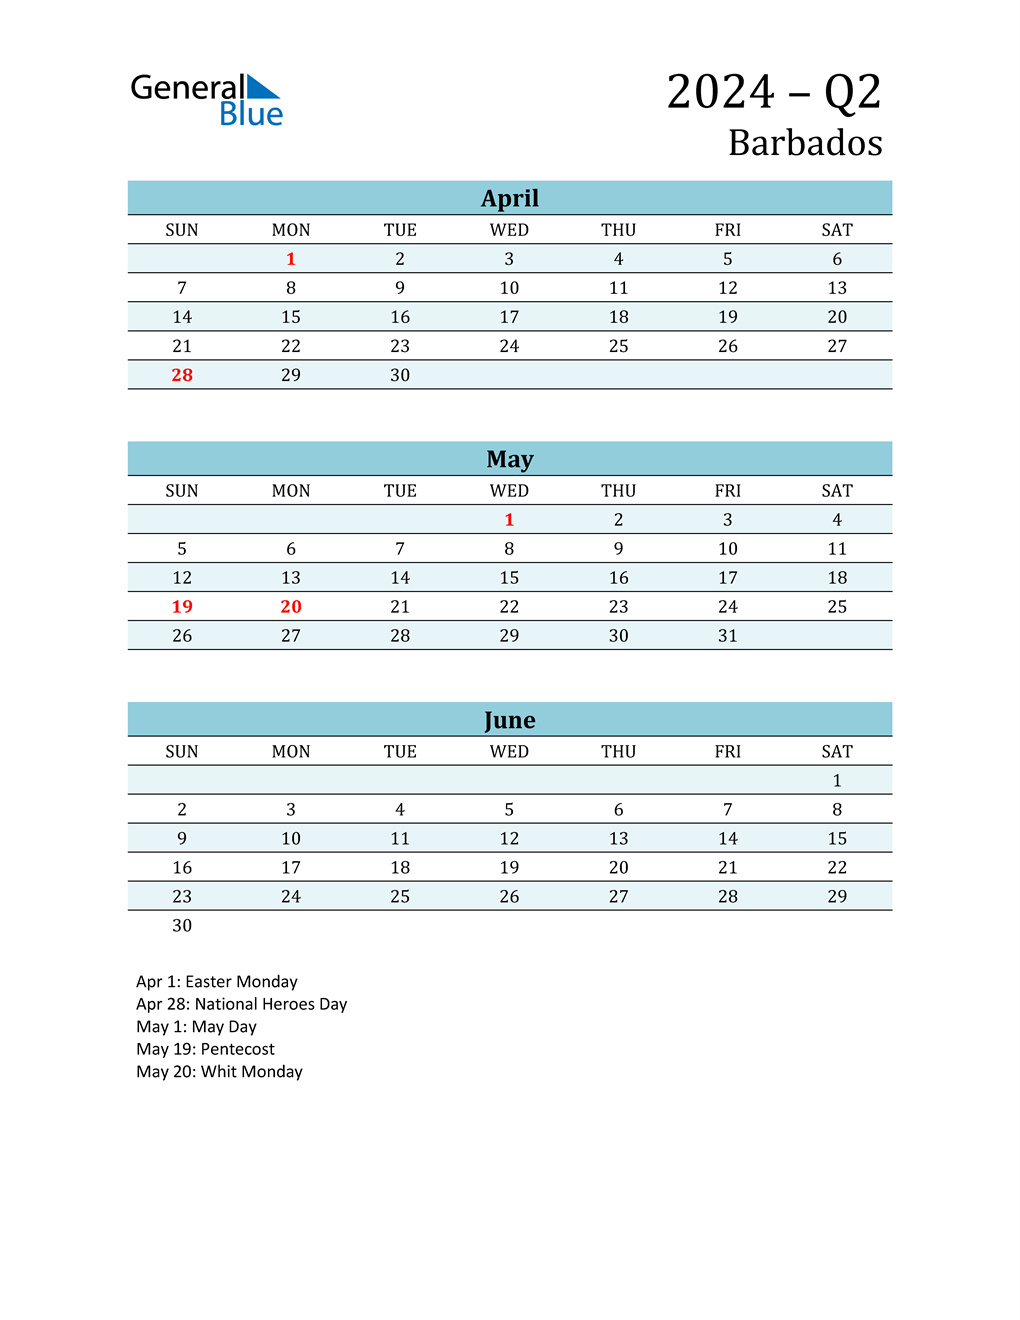 q2-2024-quarterly-calendar-with-barbados-holidays